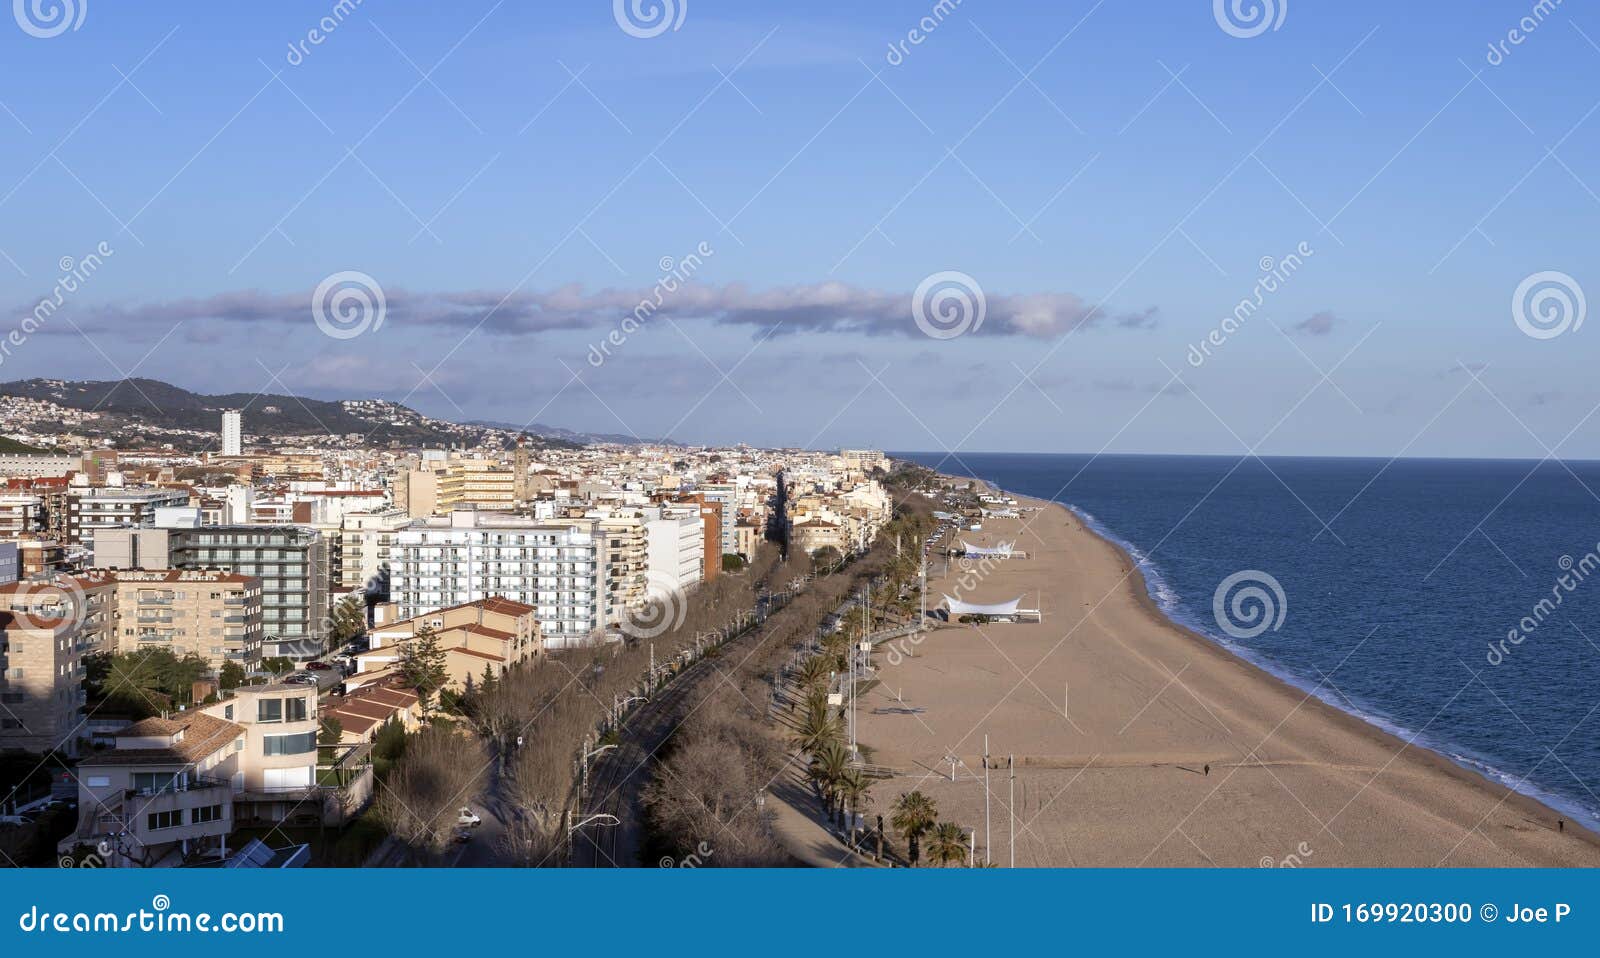 aerial panoramic view of calella city in el maresme, catalonia, spain